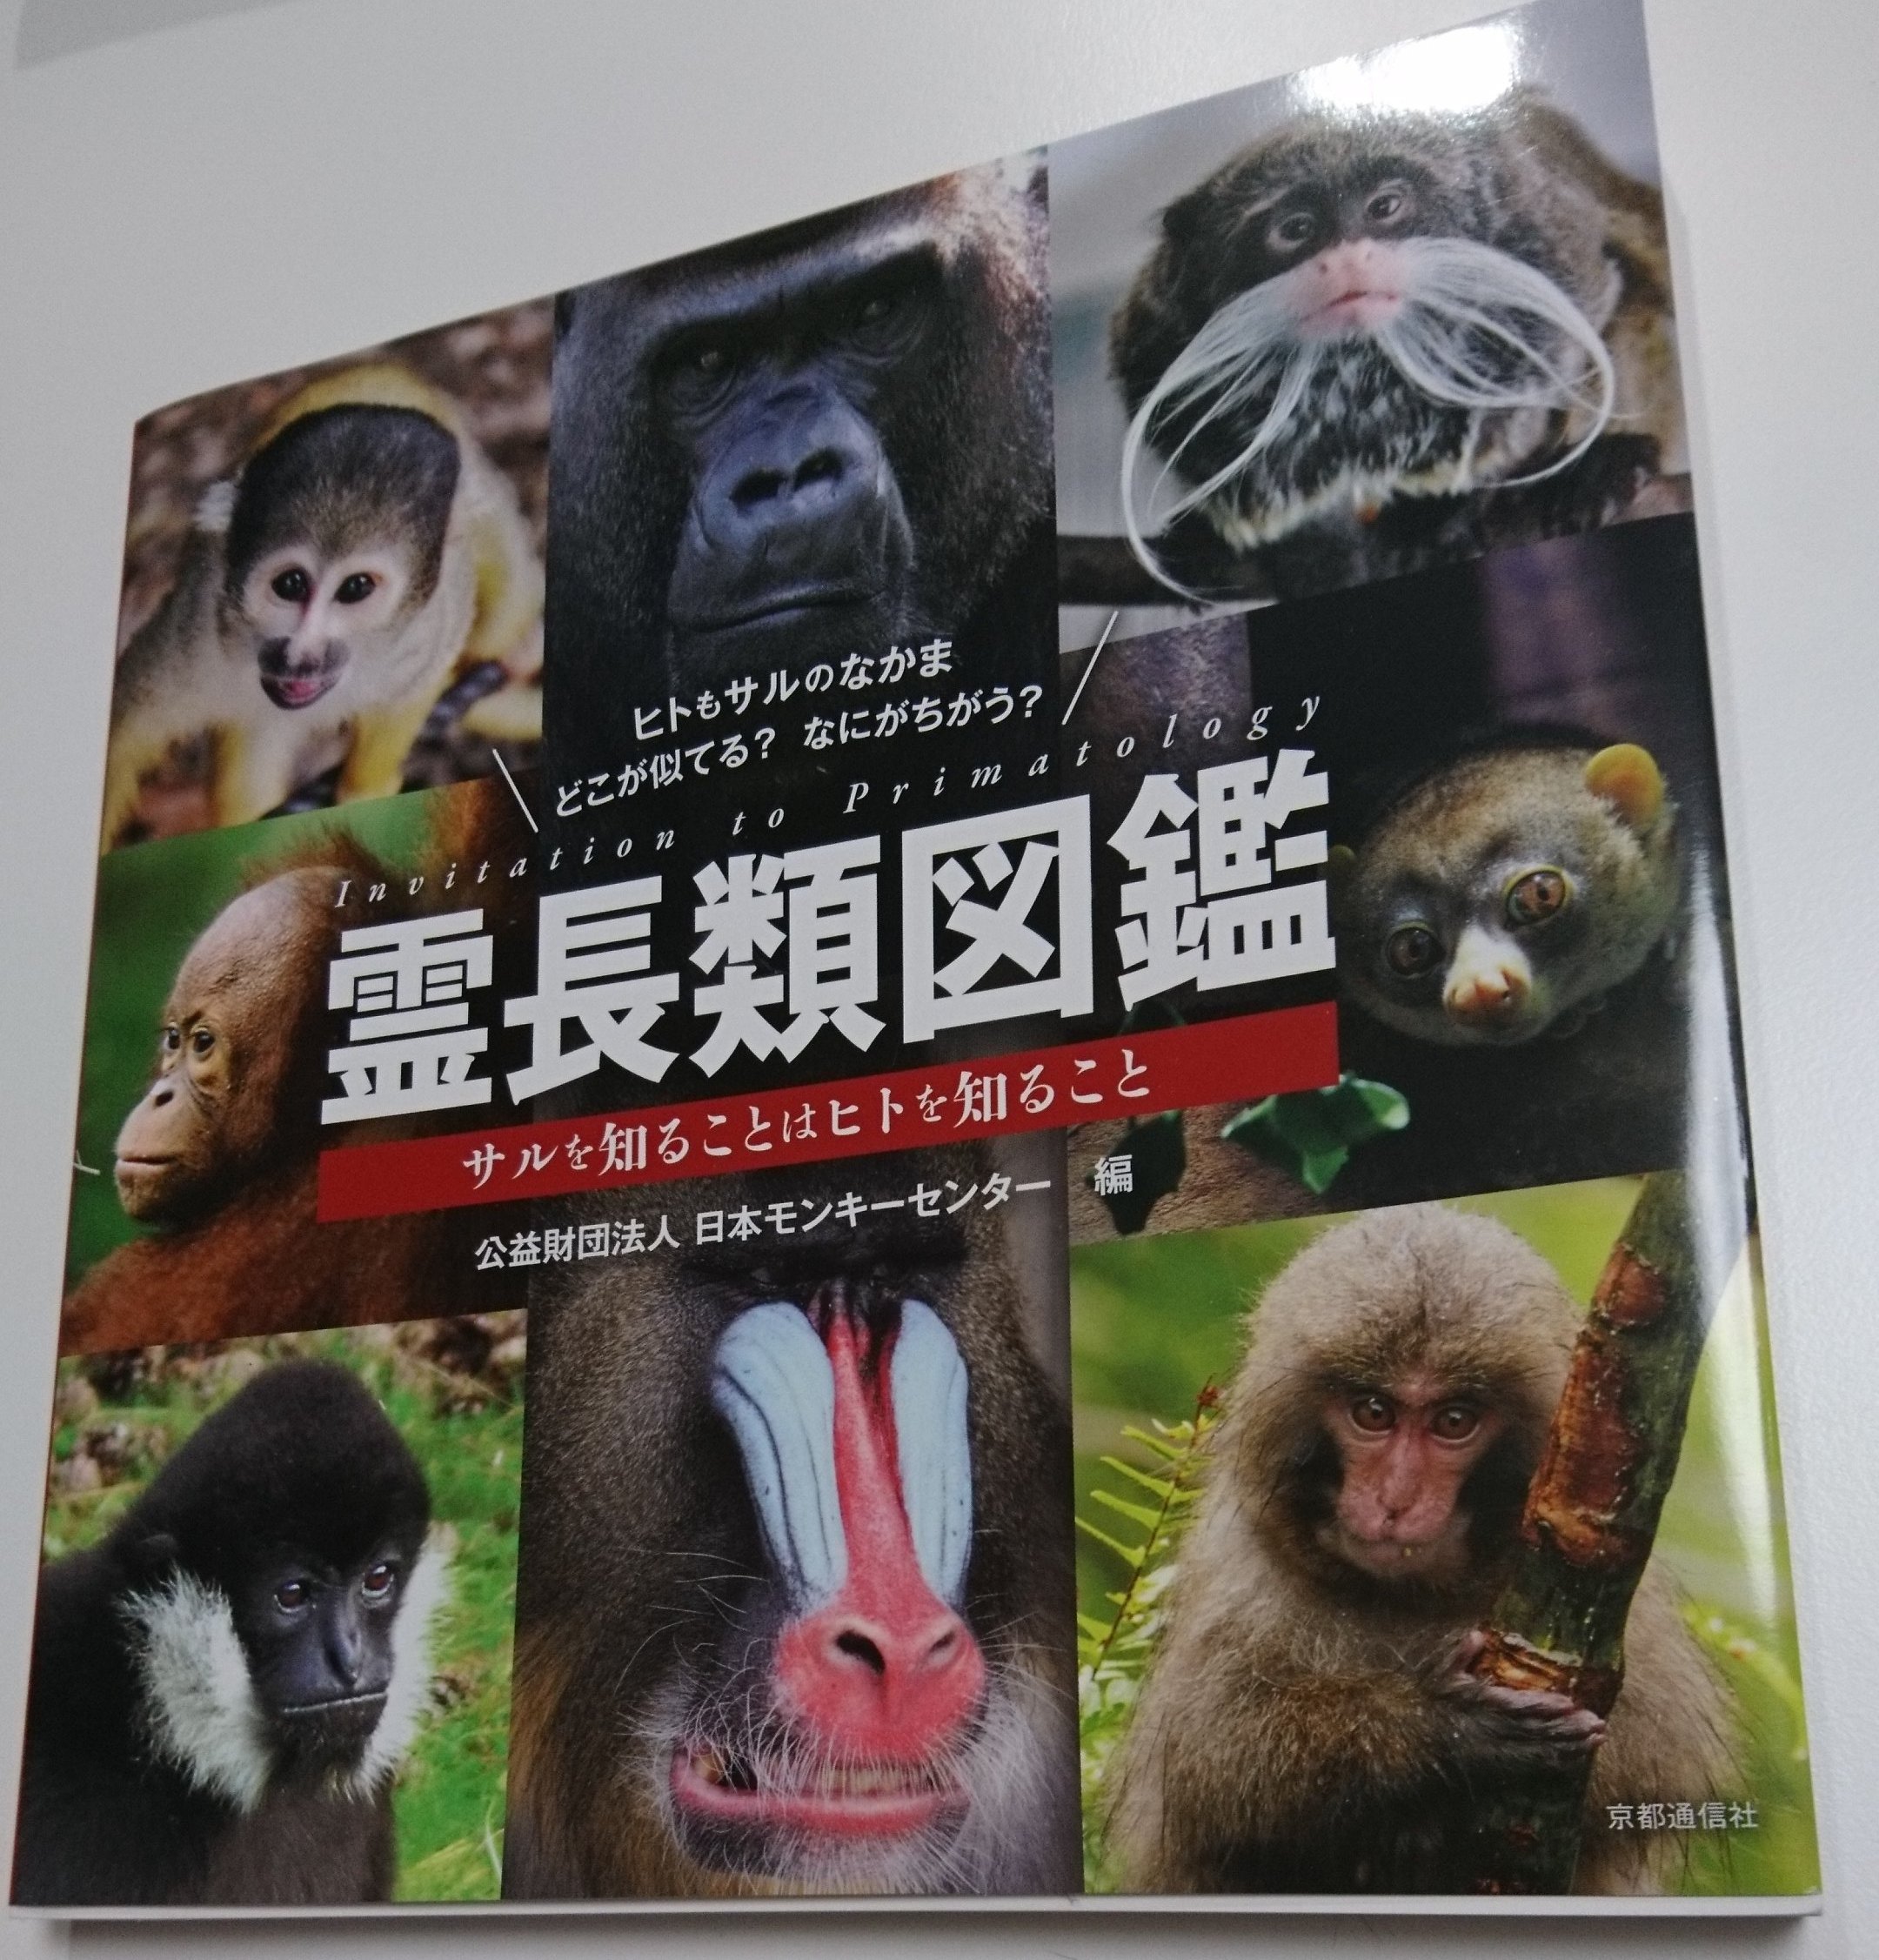 ずけもの 霊長類図鑑 日本モンキーセンターが作った サル特化の図鑑 Jmcのサル たちも写真で参加していて Jmcガイドとしても使える 収録サルの種類も多く 習性などの読み物も充実 サルの図鑑としてとても良い一冊 T Co Tub3hya26z Twitter